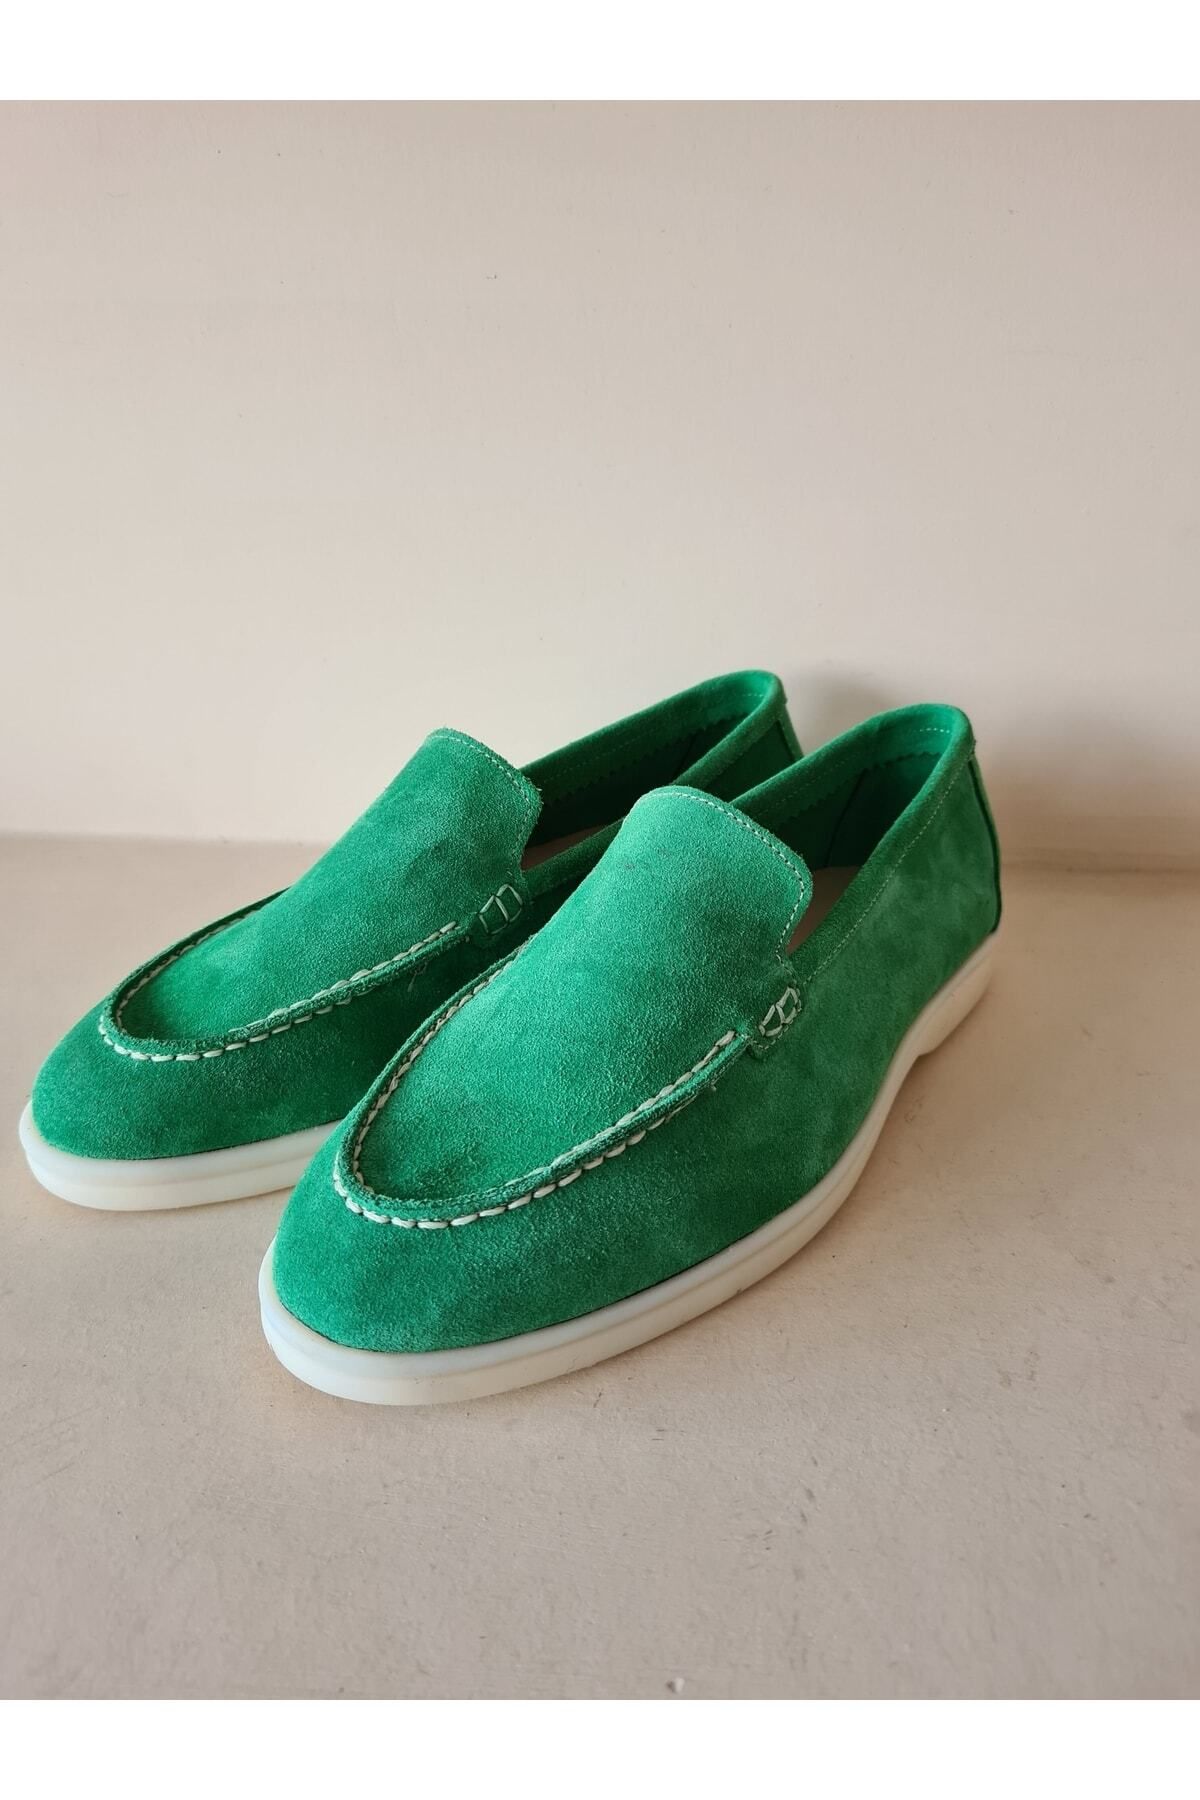 AYAK&KABIM Hakiki Deri Yeşil Günlük Kadın Ayakkabı Loafer Makosen